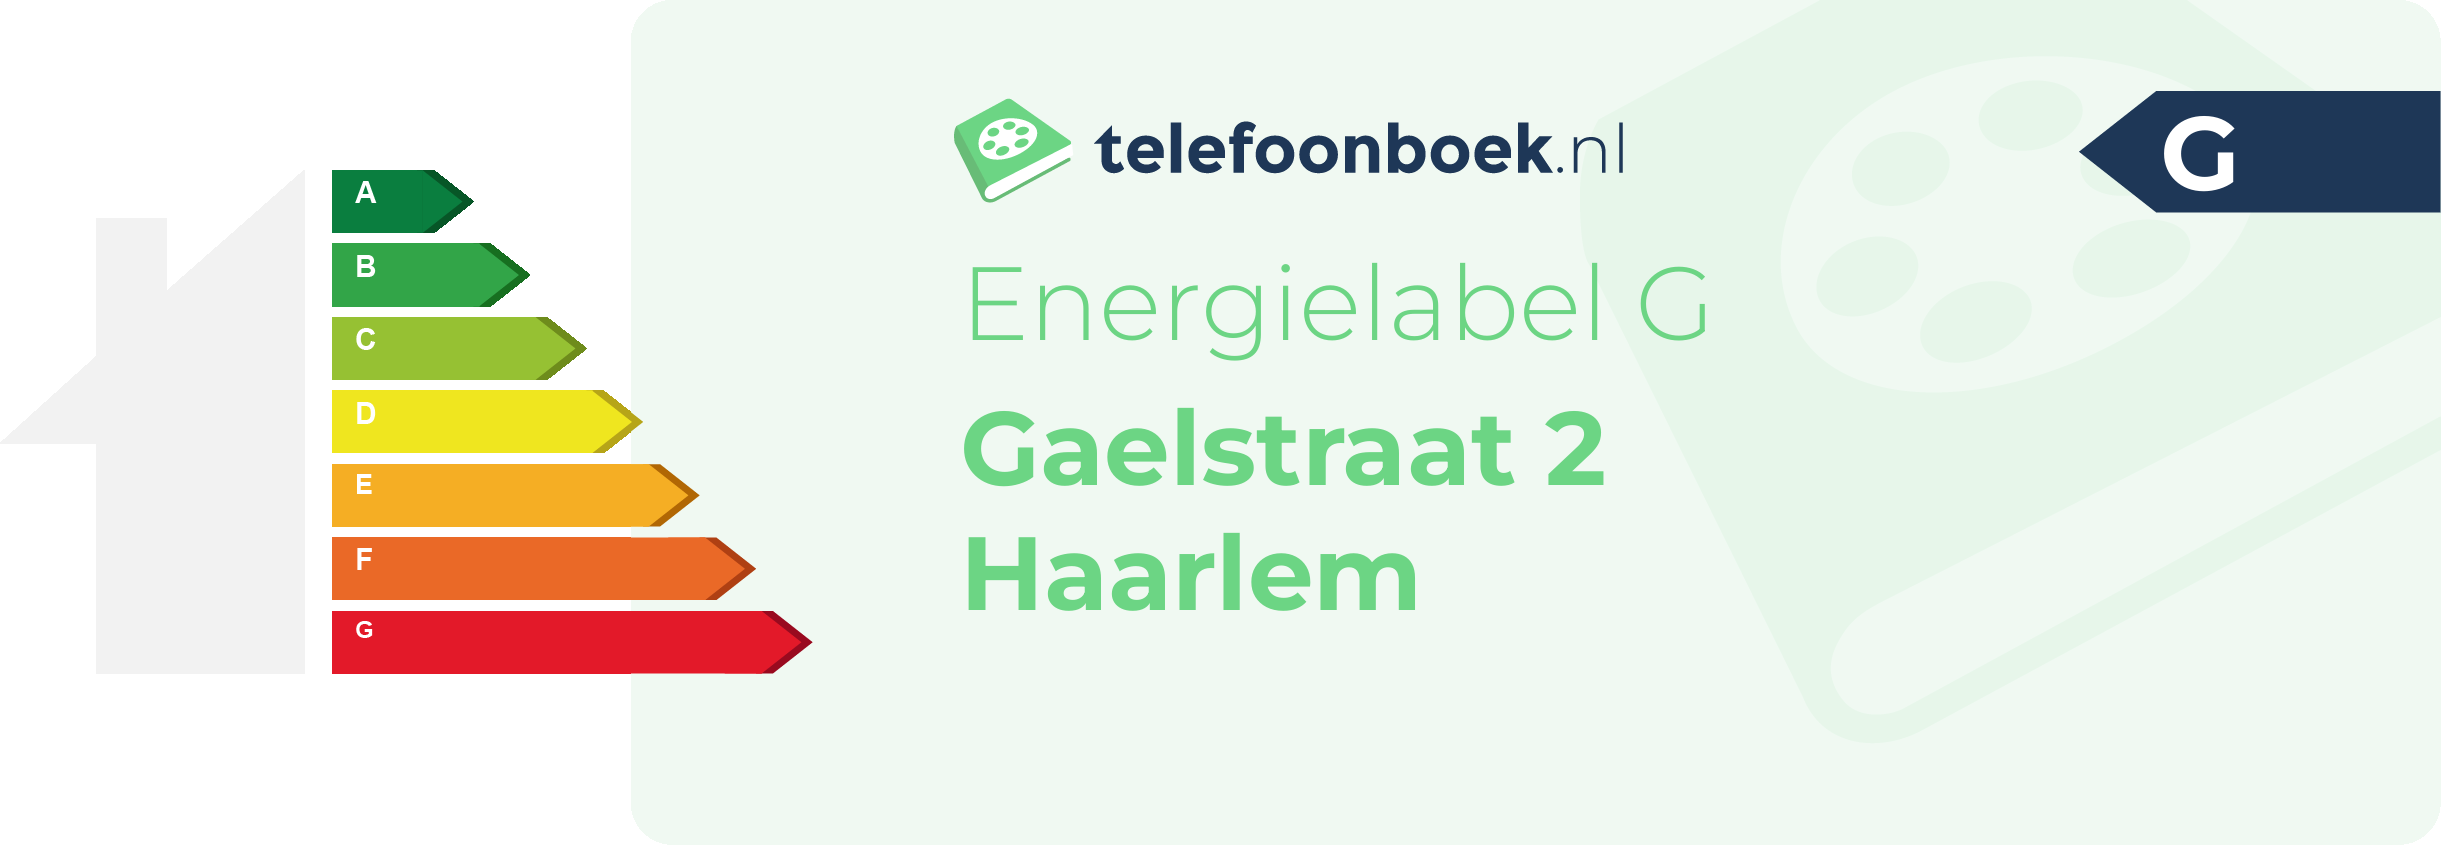 Energielabel Gaelstraat 2 Haarlem